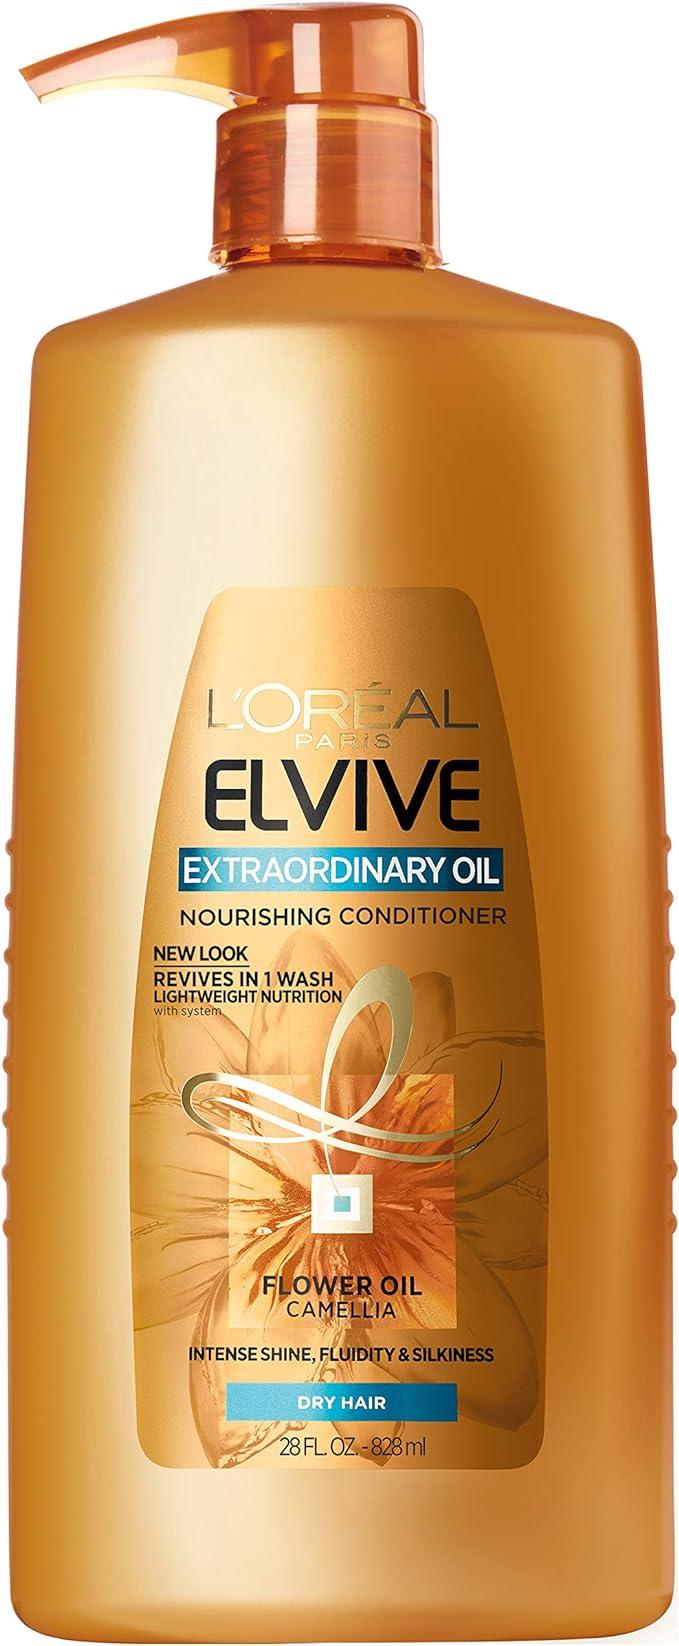 loreal paris extraordinary oil nourishing conditioner  l'oreal paris ?b0752fxrq6